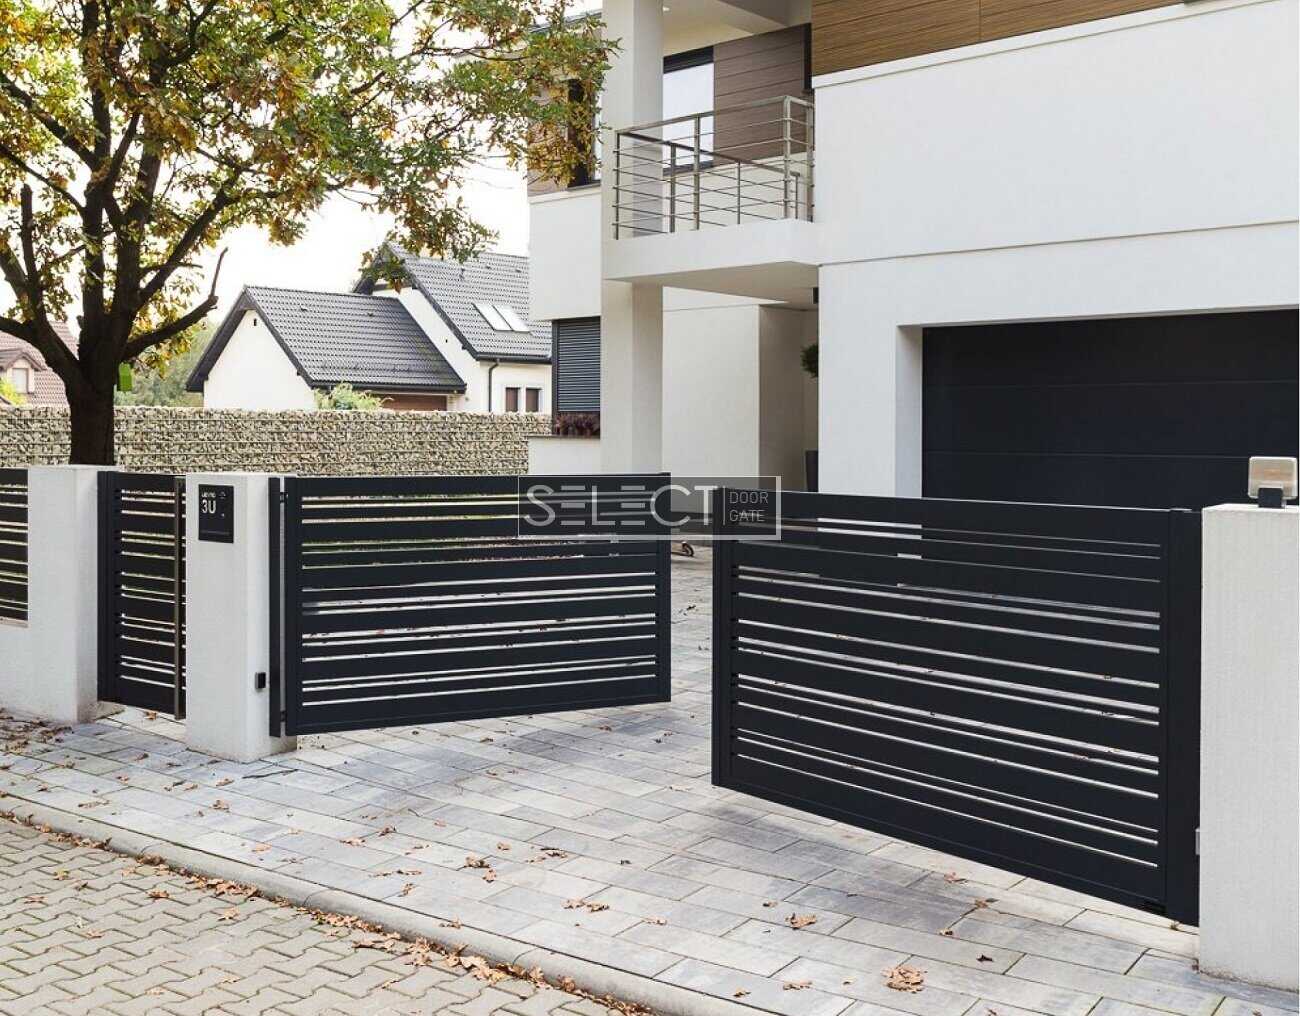 Розпашні та відкатні автоматичні ворота з хвірткою - вуличні металеві в'їзні огорожі селект 